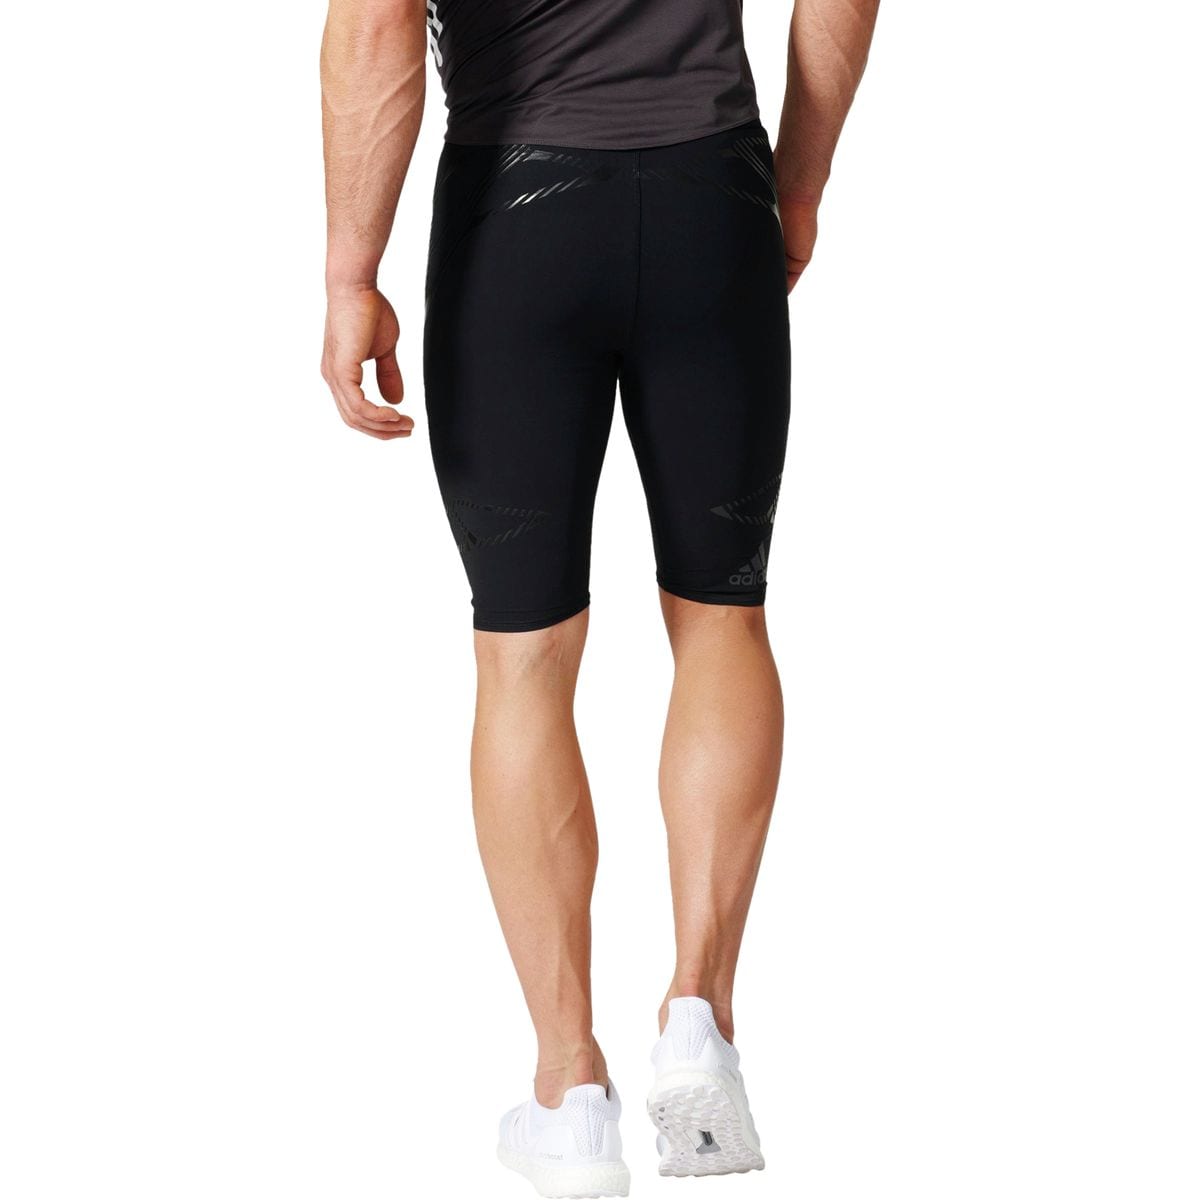 Adidas Adizero Sprintweb Short Tight - Men's - Clothing